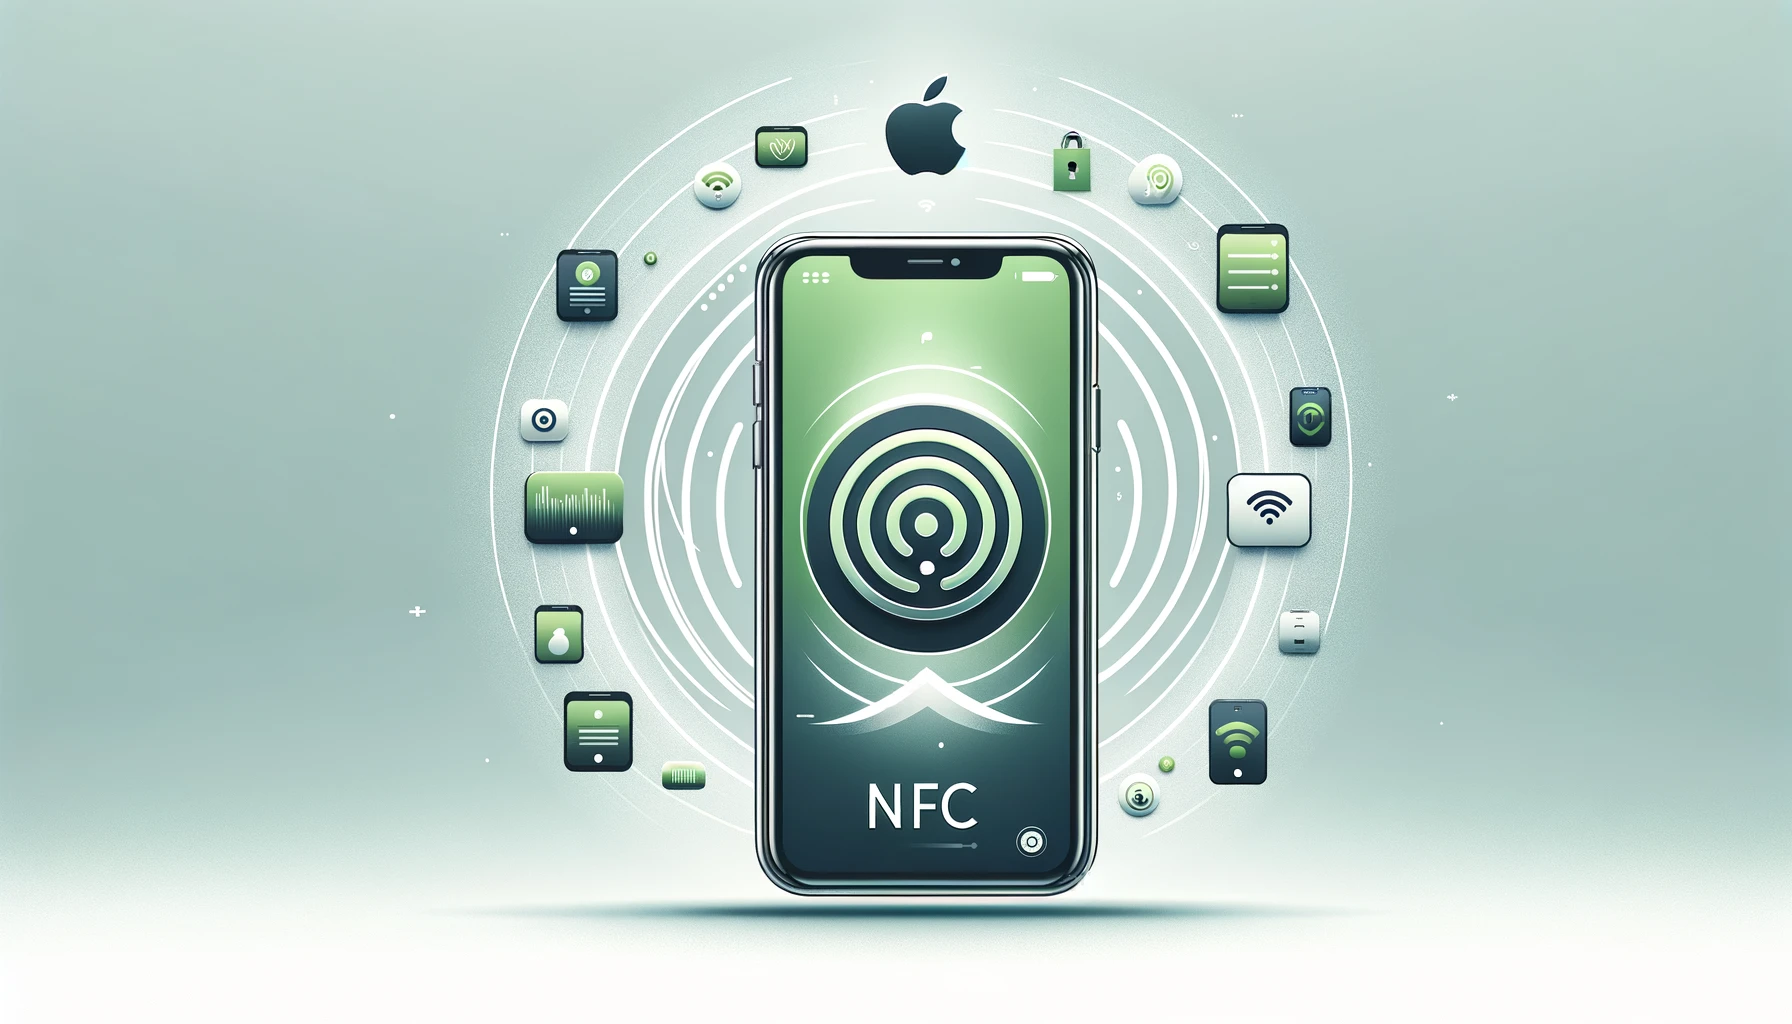 なぜ NFC が重要なのか